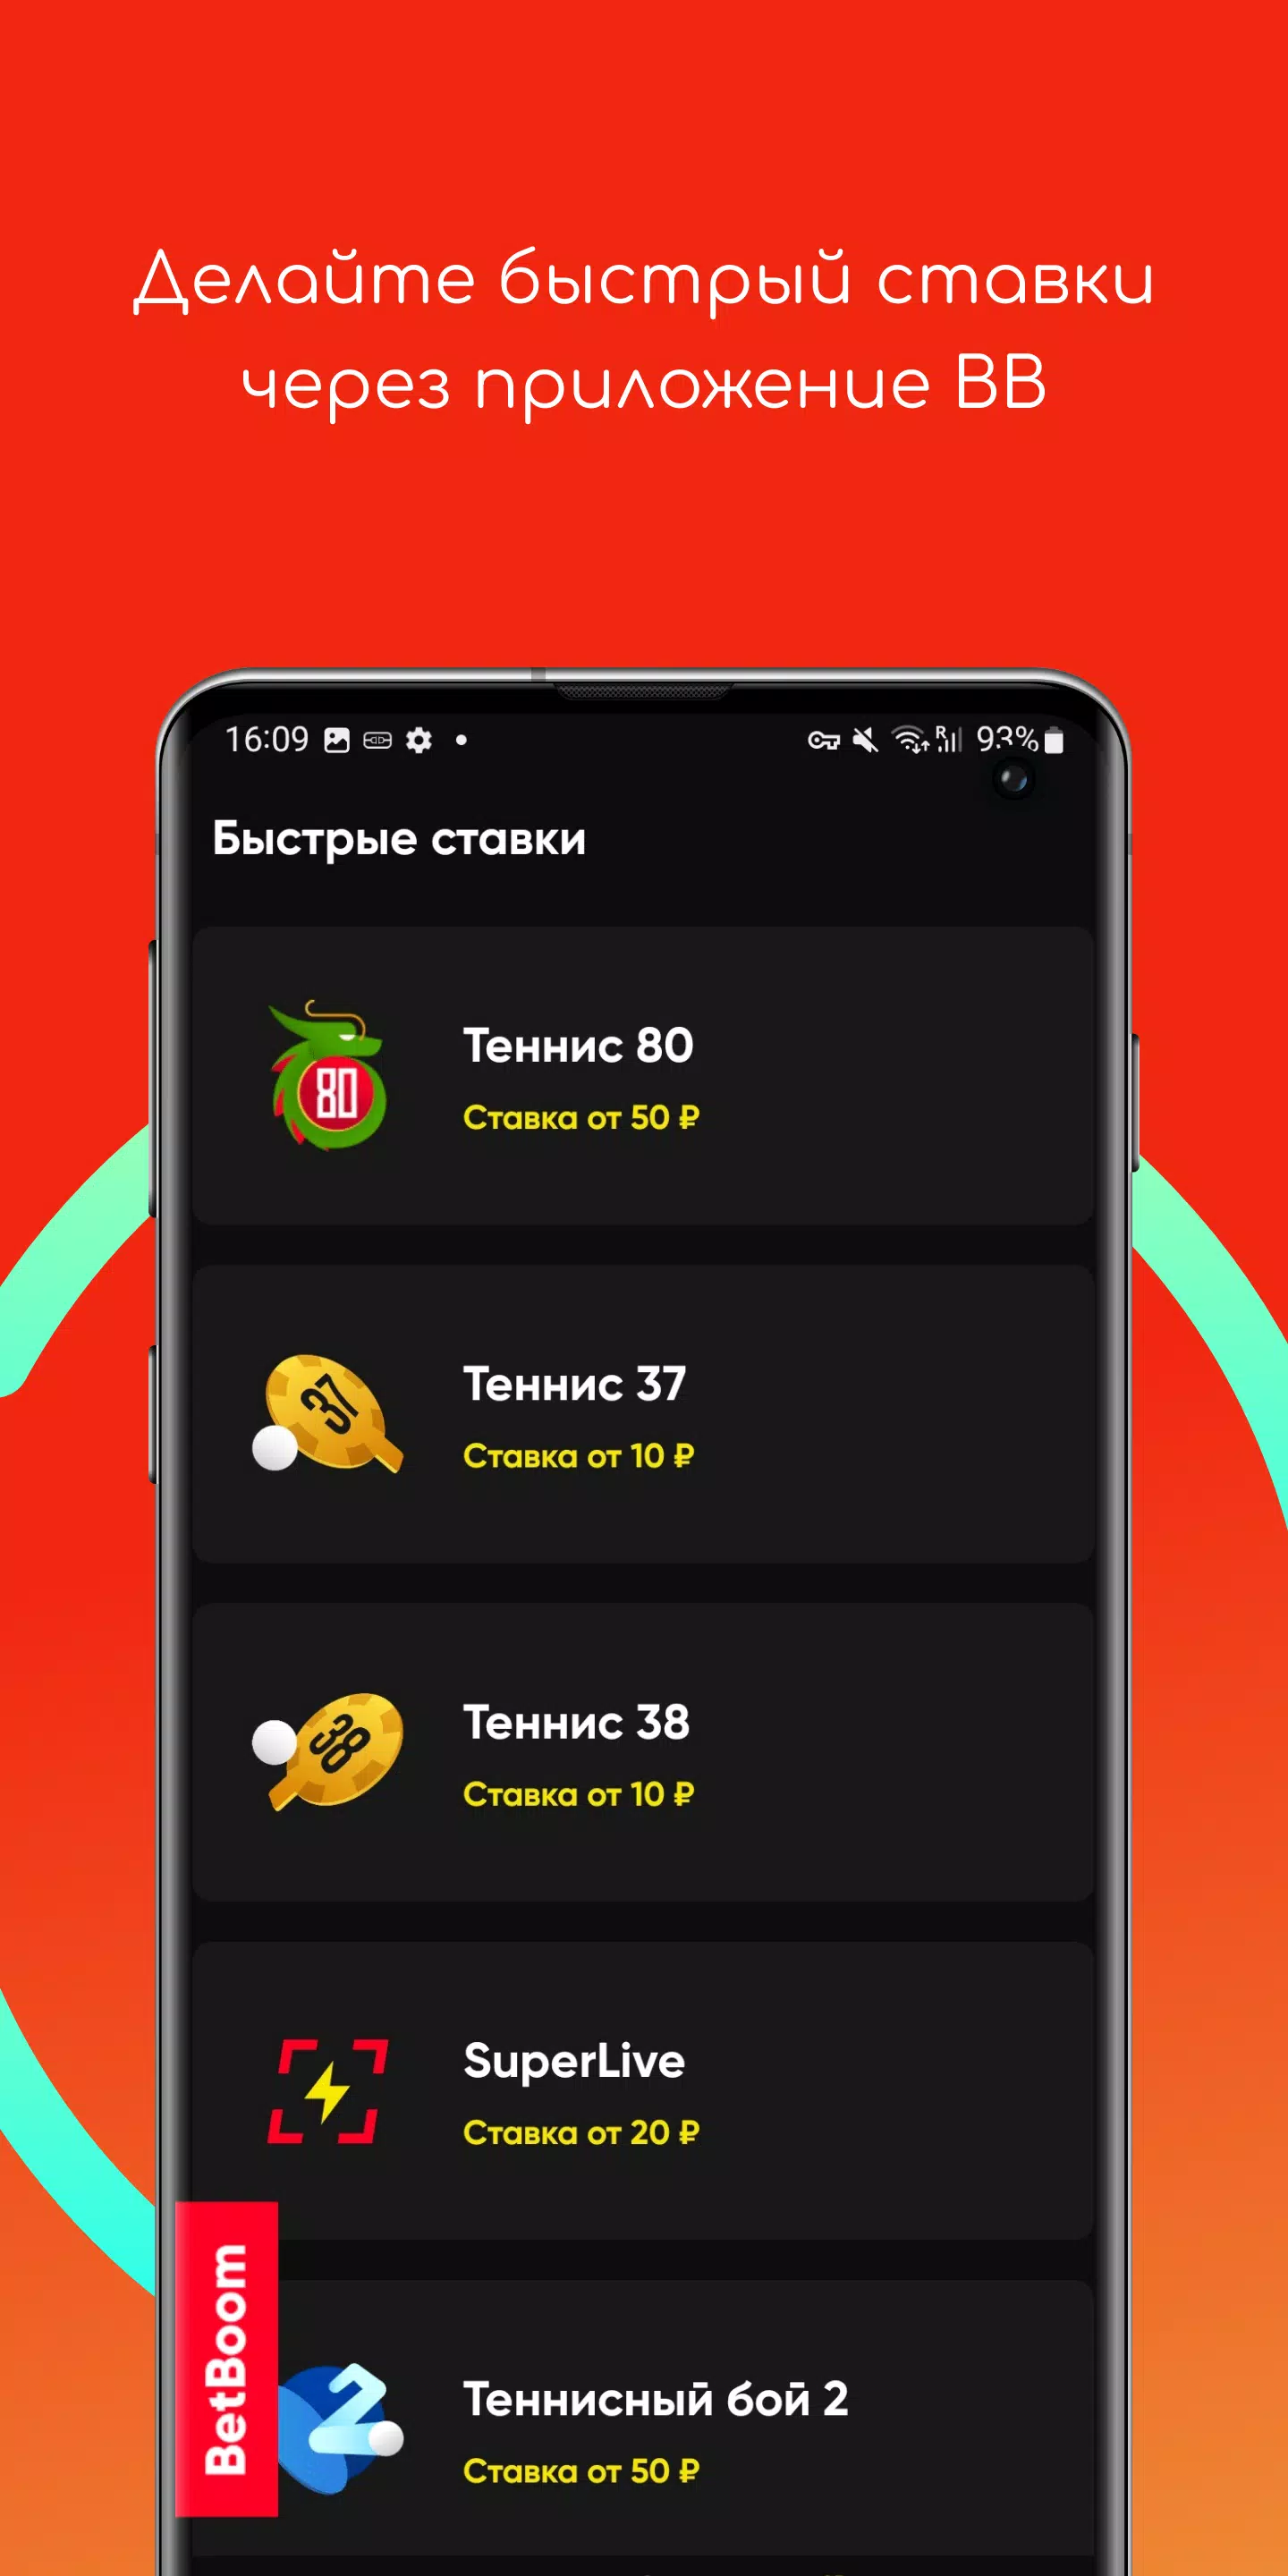 Betboom app: baixe o Betboom apk para Android e ganhe R$ 2.580